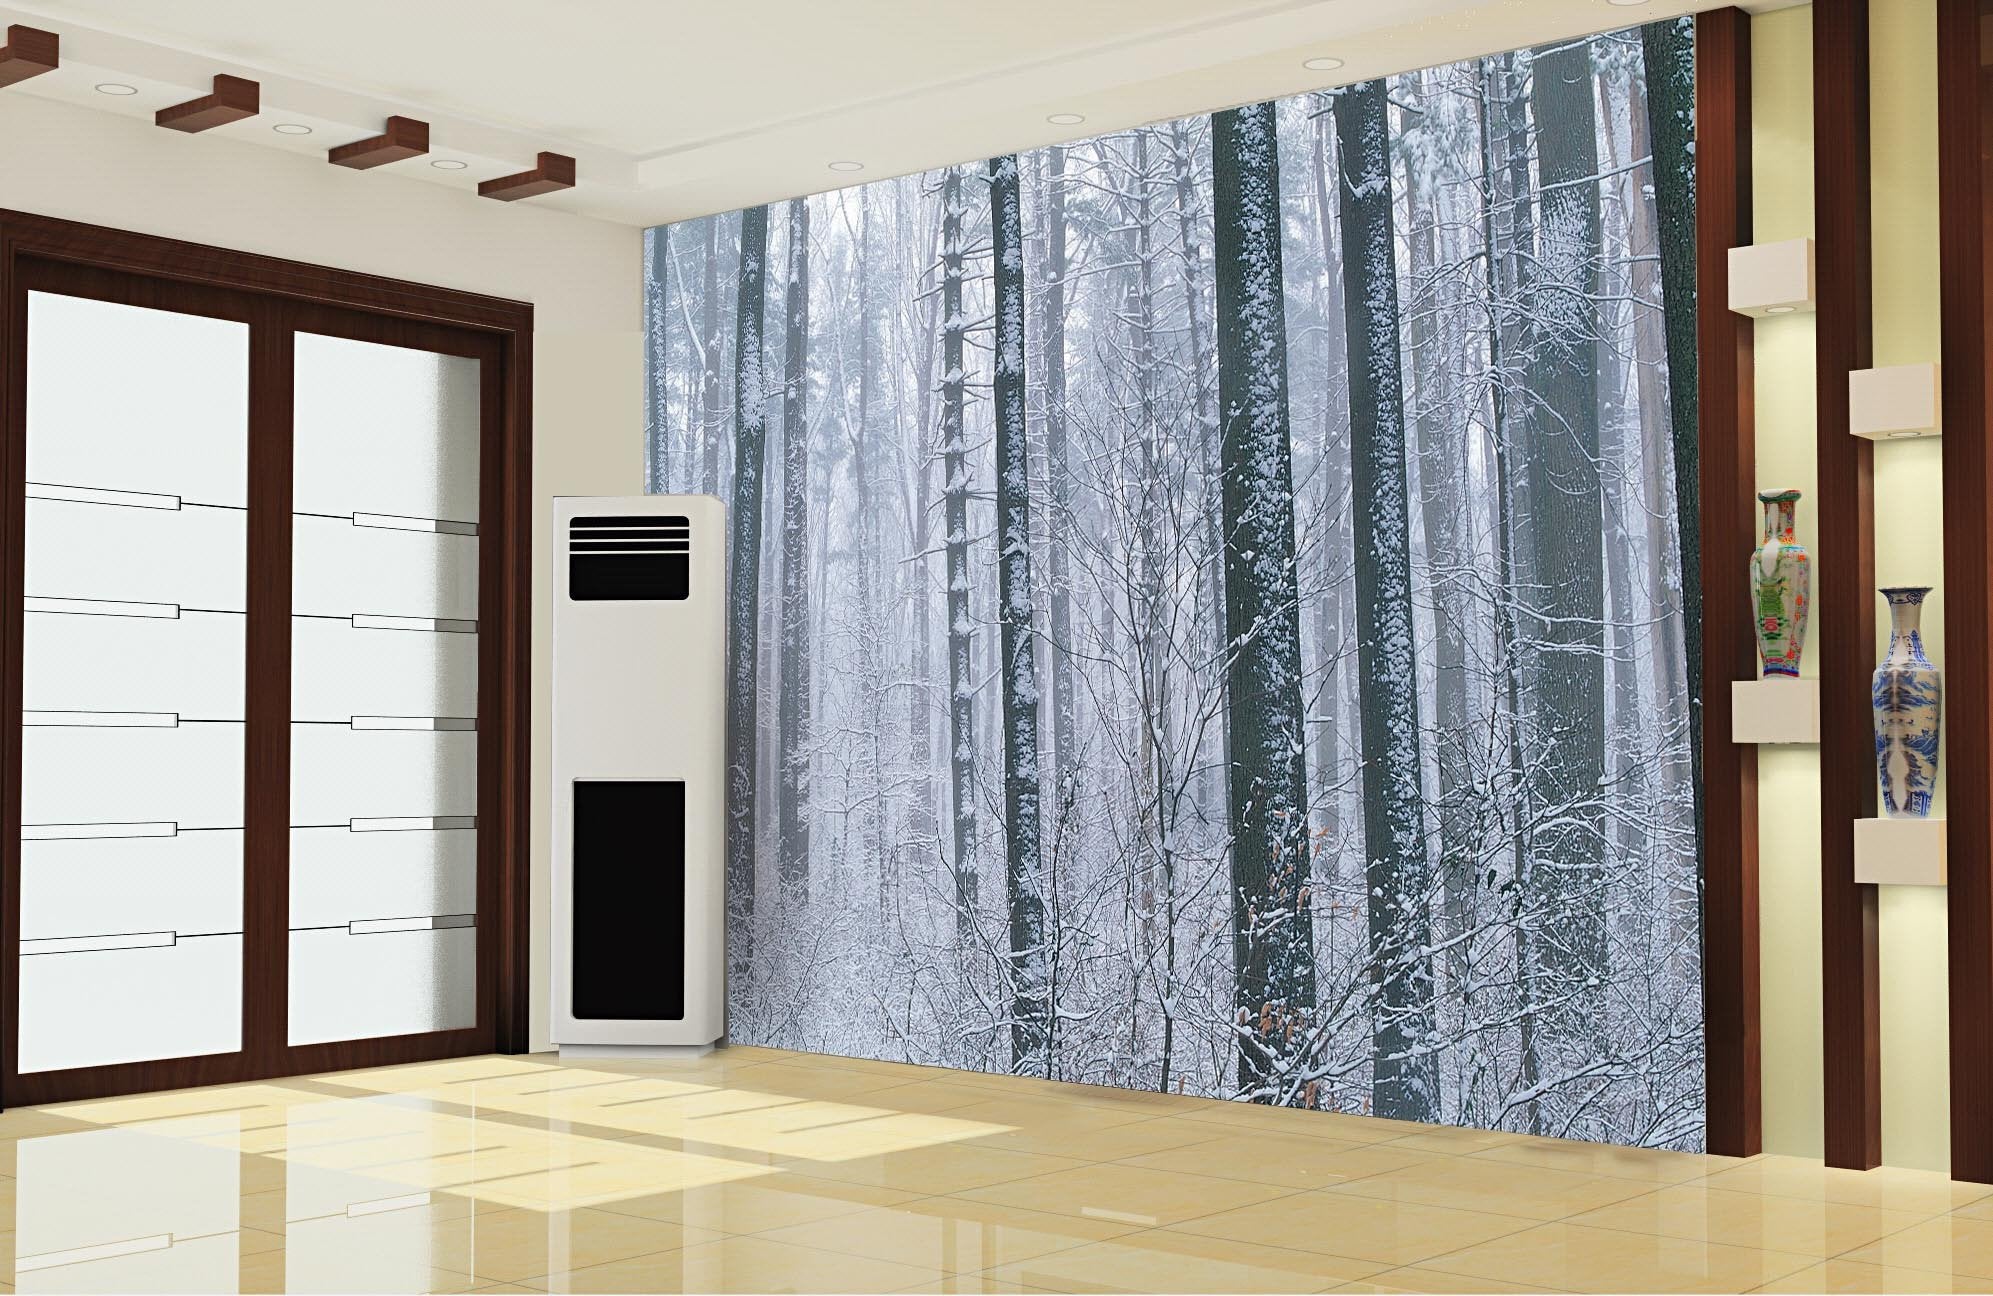 Snowy Forest 4 Wallpaper AJ Wallpaper 